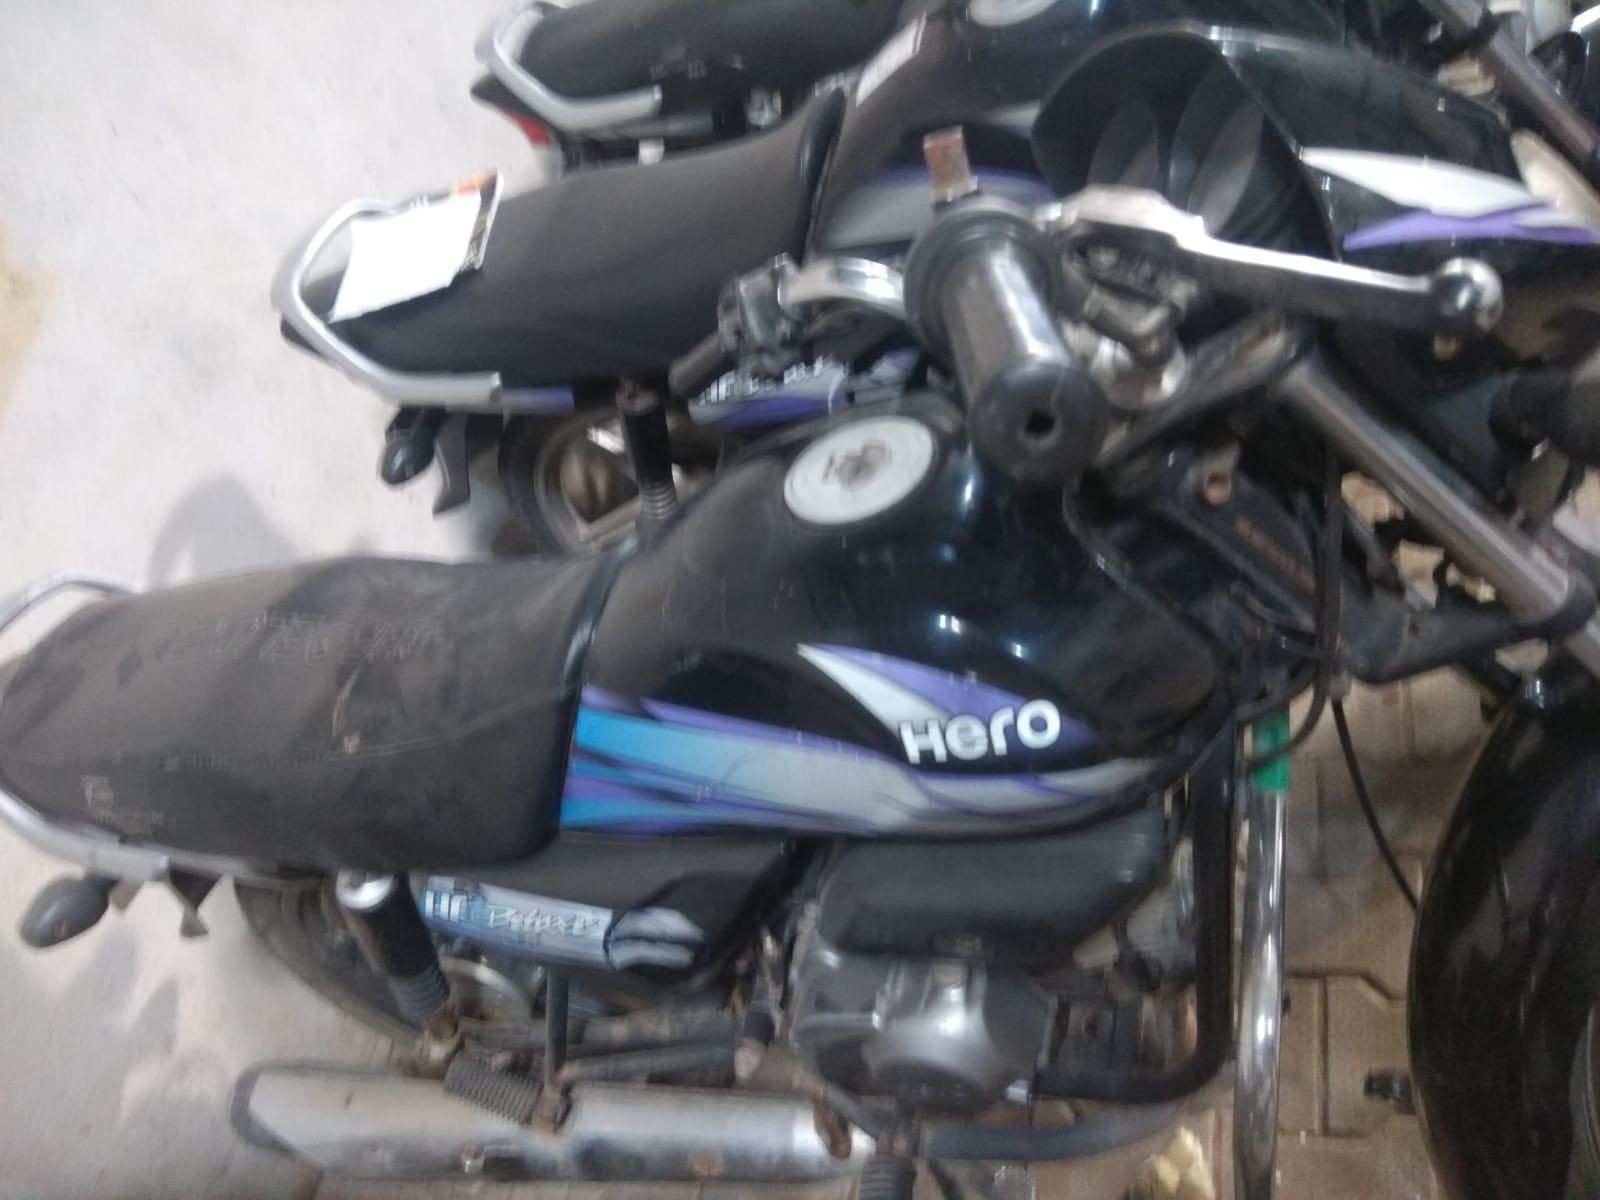 Used Hero HF Deluxe 100cc 2016